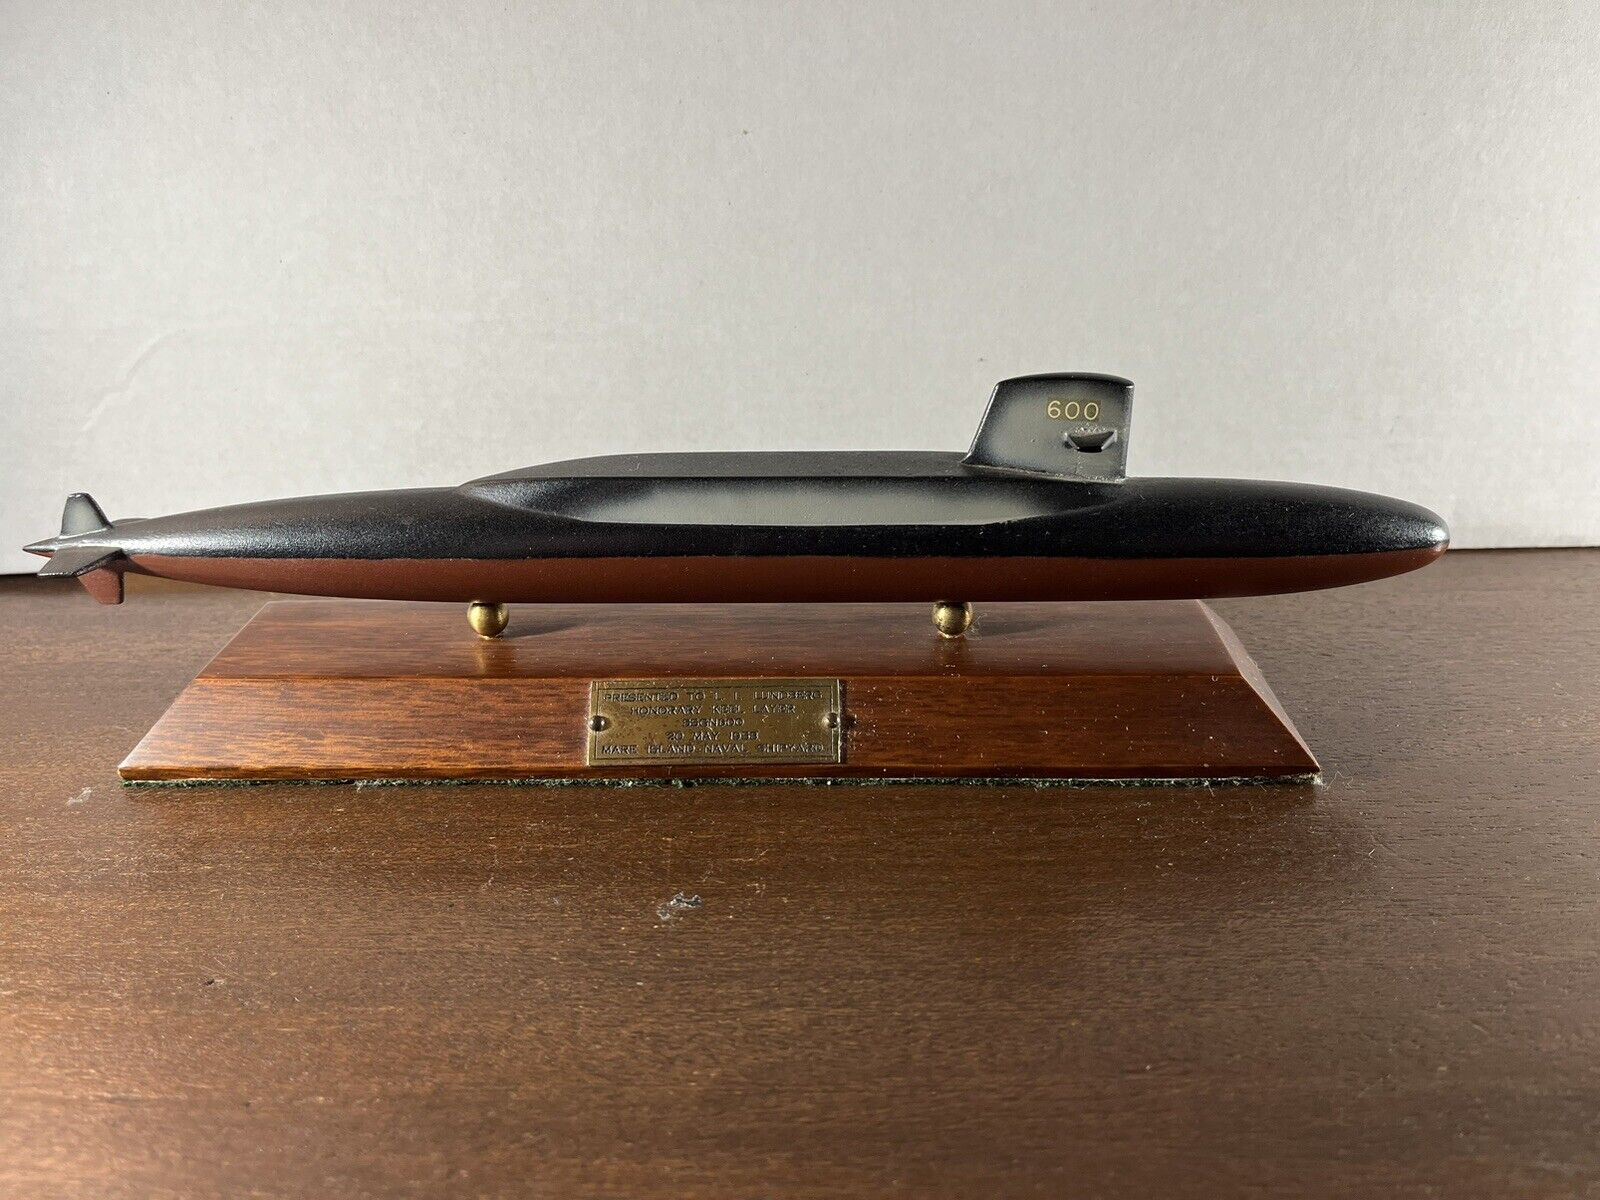 Vintage 1958 SSGN600 Submarine Desktop Model